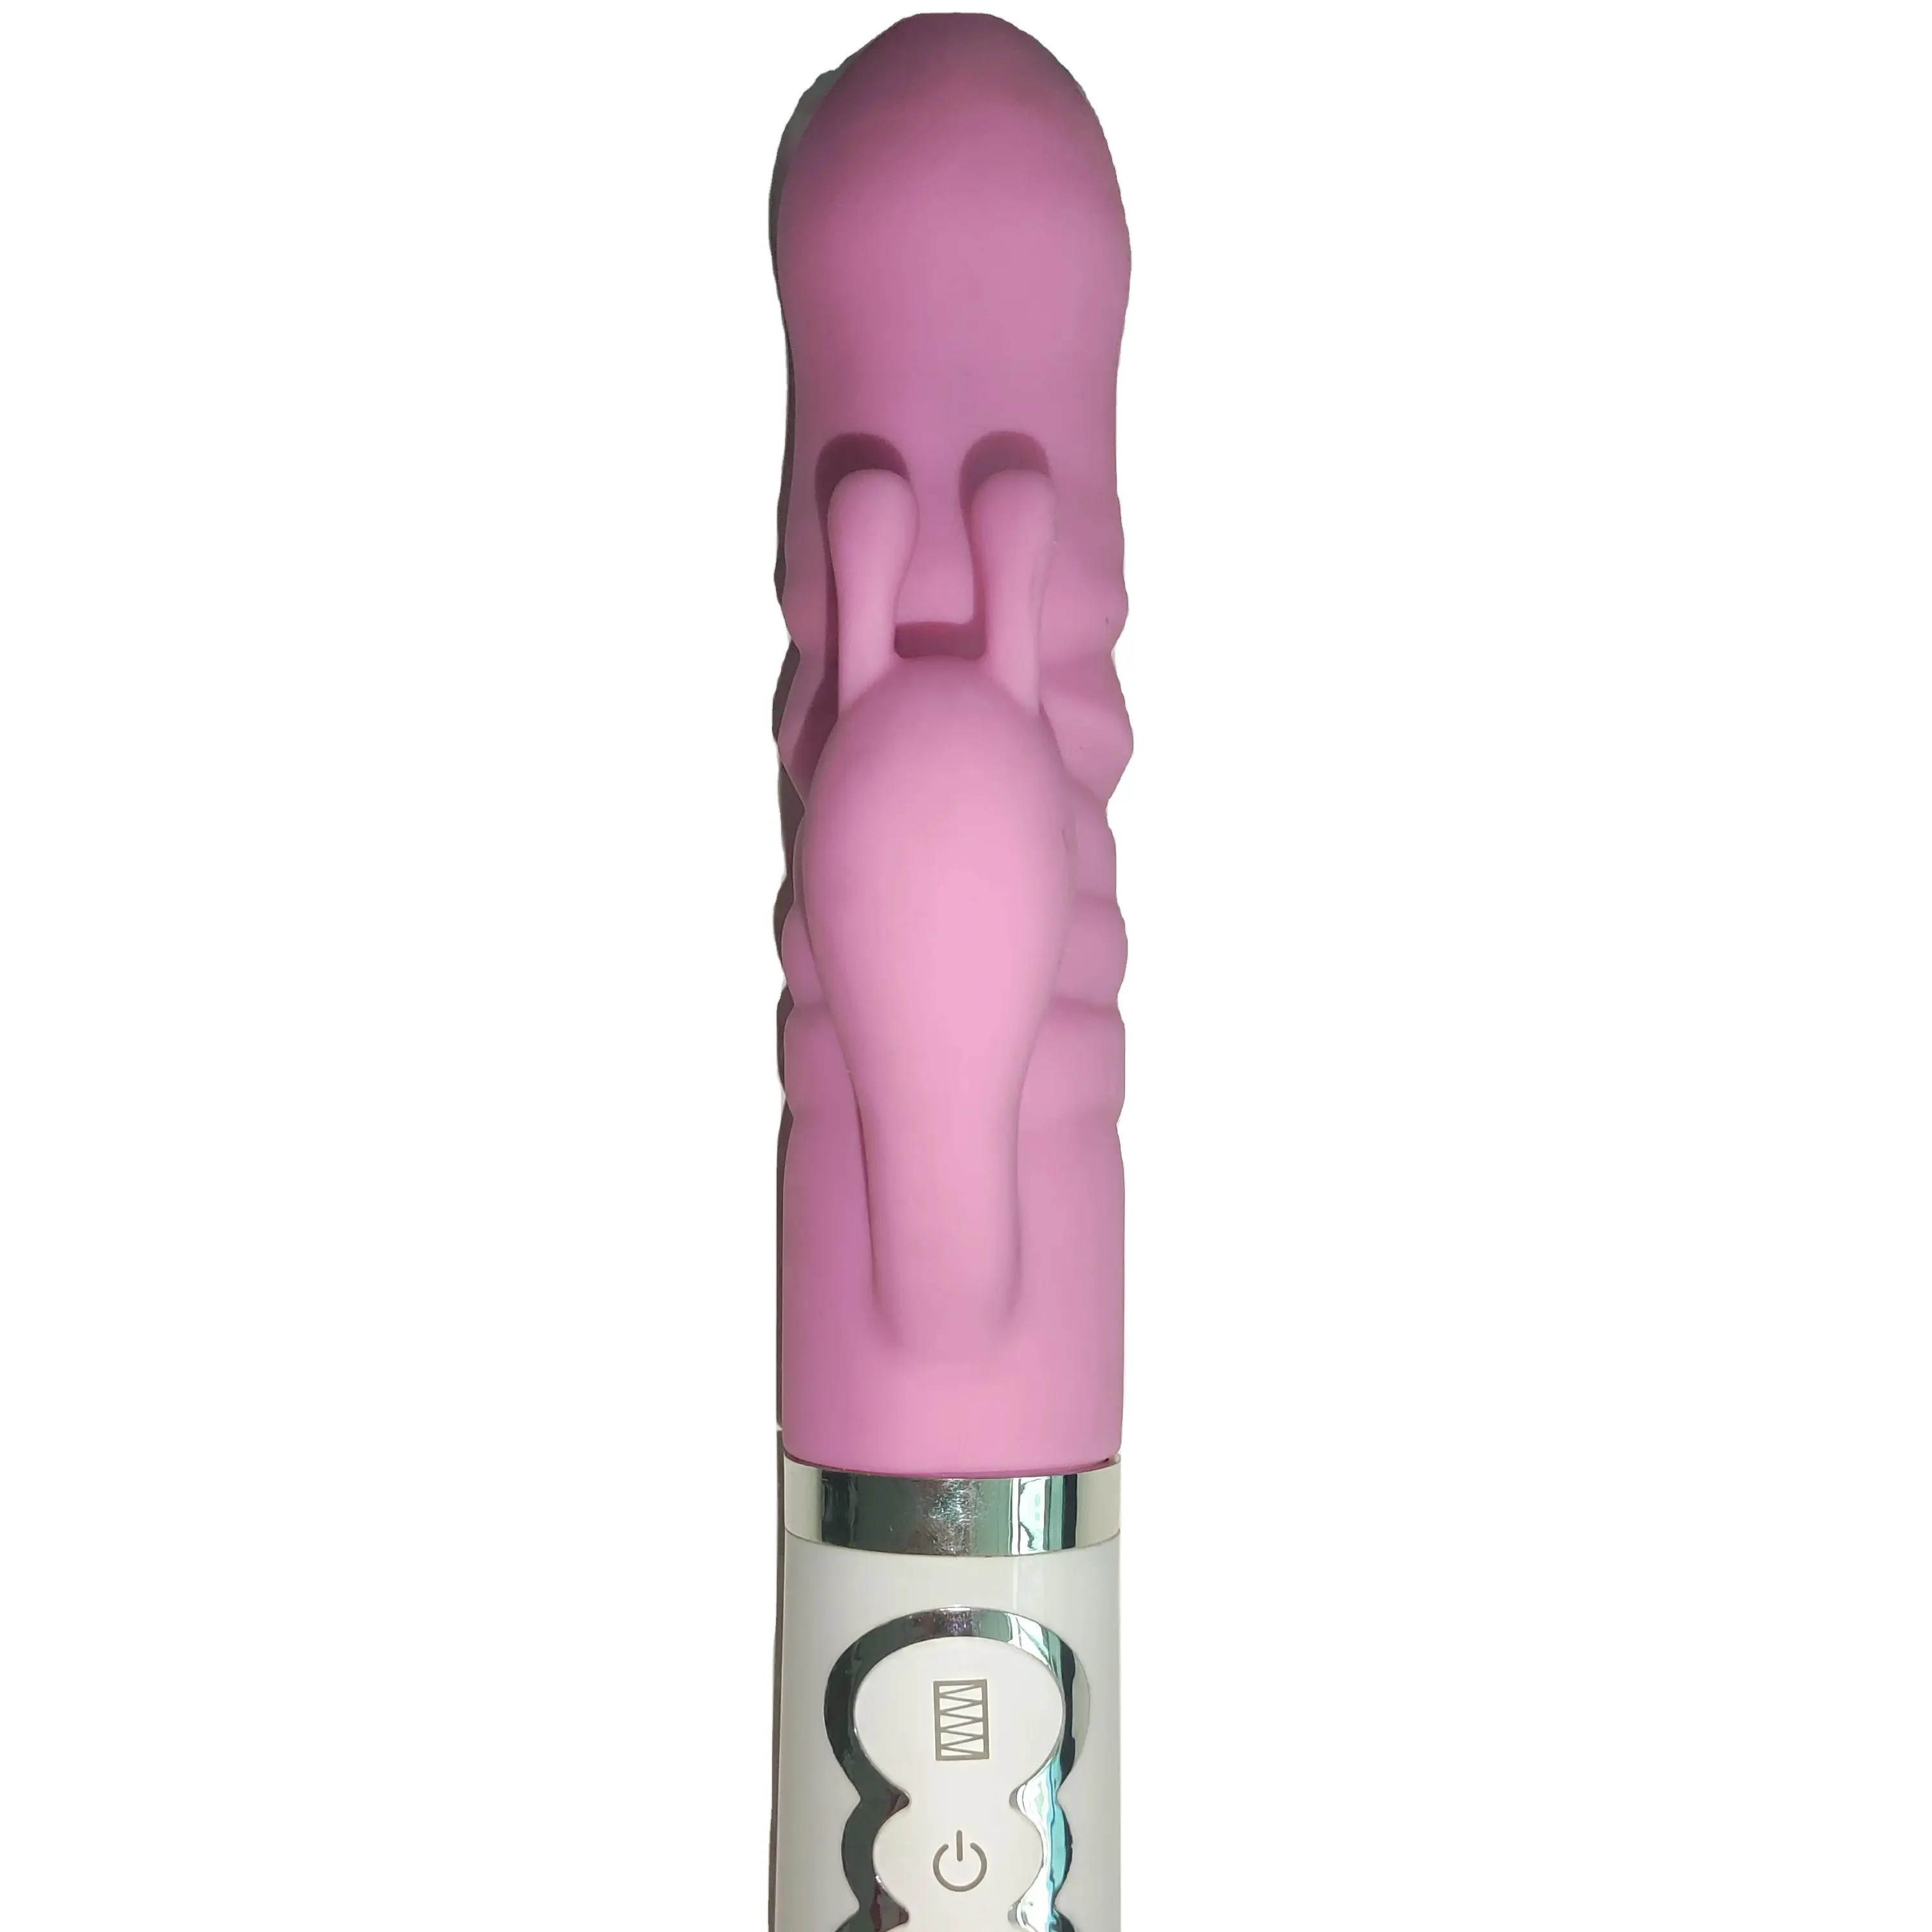 AVA çift motorlu kadınlar ve erkekler için silikon tavşan vibratör yapay Penis yetişkin seks oyuncak vajina ve Penis masaj ana sıkmak için